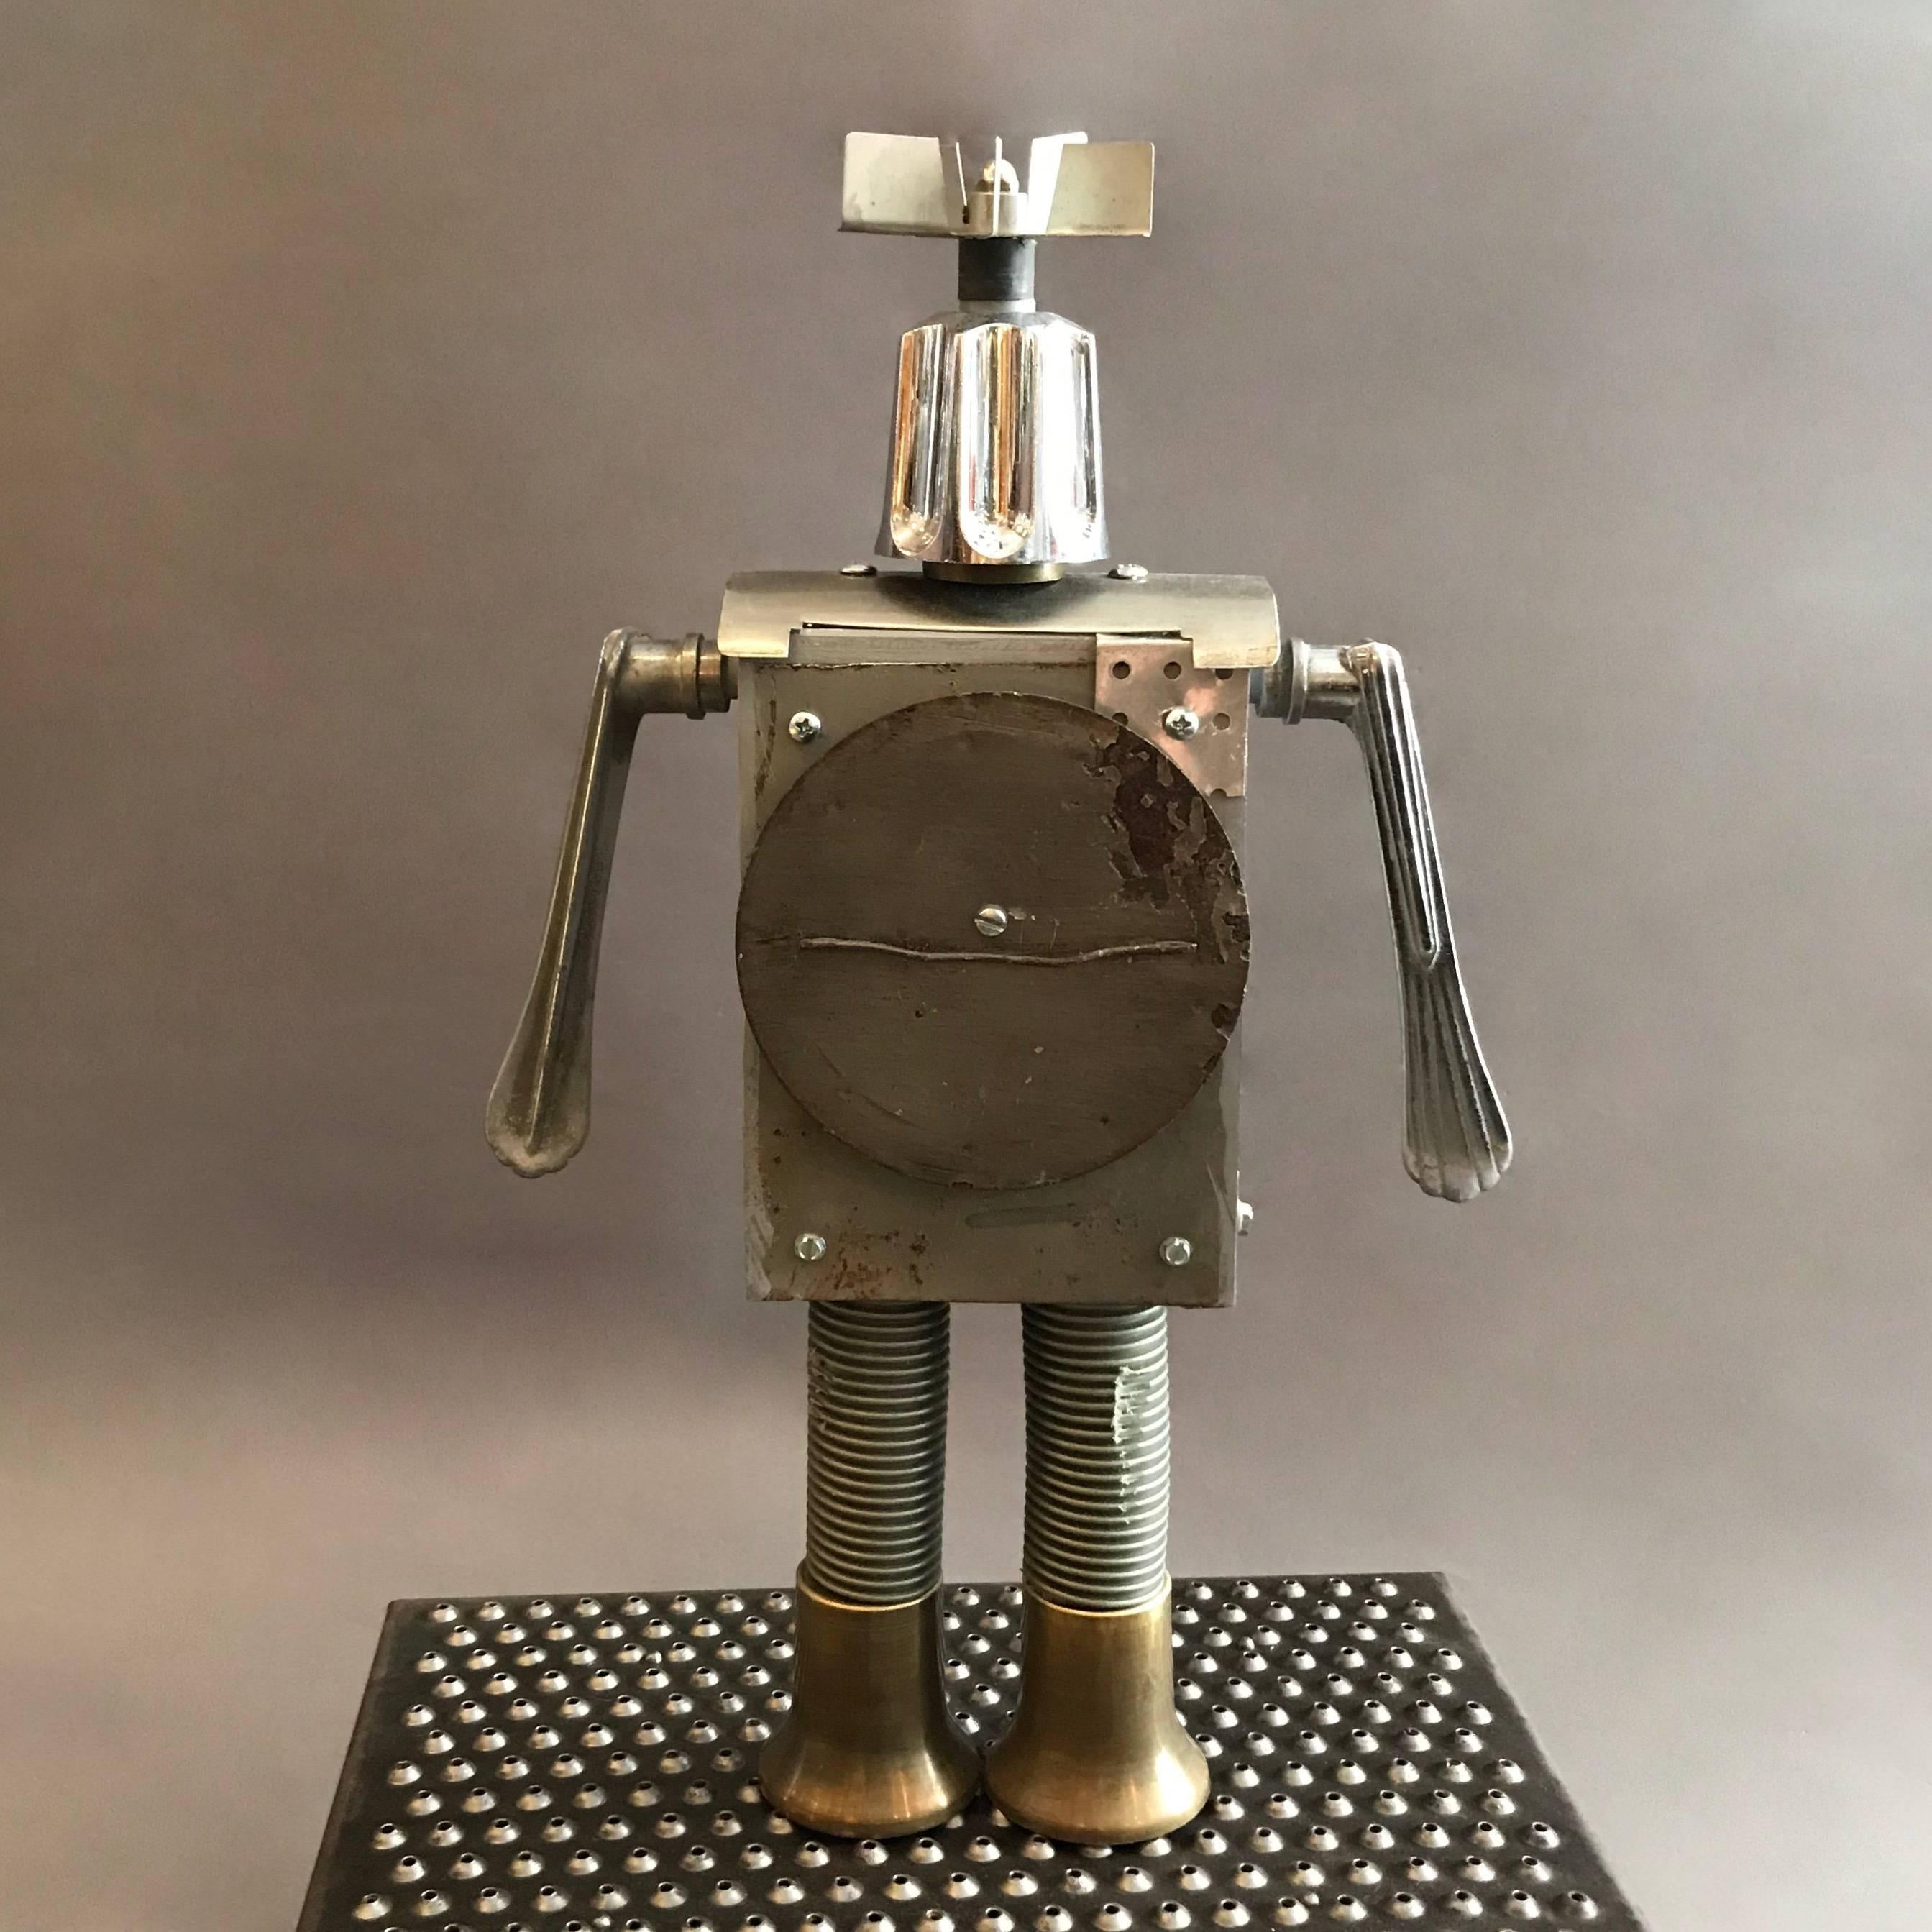 Machine Age Breaker Robot Sculpture By Bennett Robot Works